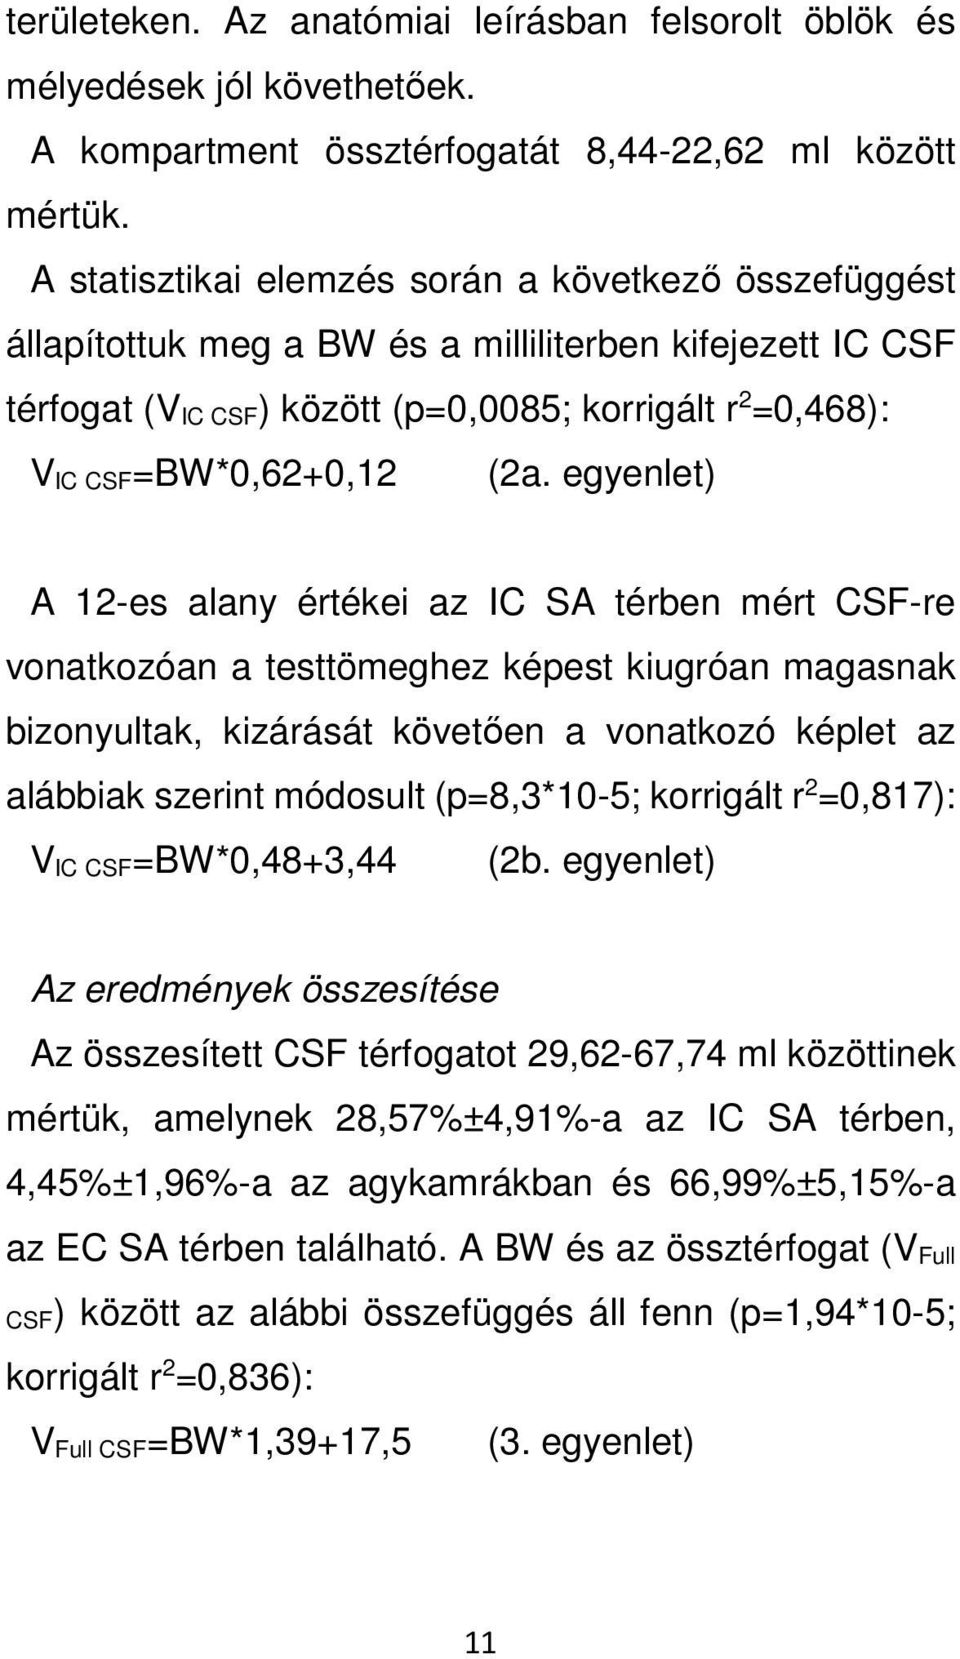 egyenlet) A 12-es alany értékei az IC SA térben mért CSF-re vonatkozóan a testtömeghez képest kiugróan magasnak bizonyultak, kizárását követően a vonatkozó képlet az alábbiak szerint módosult